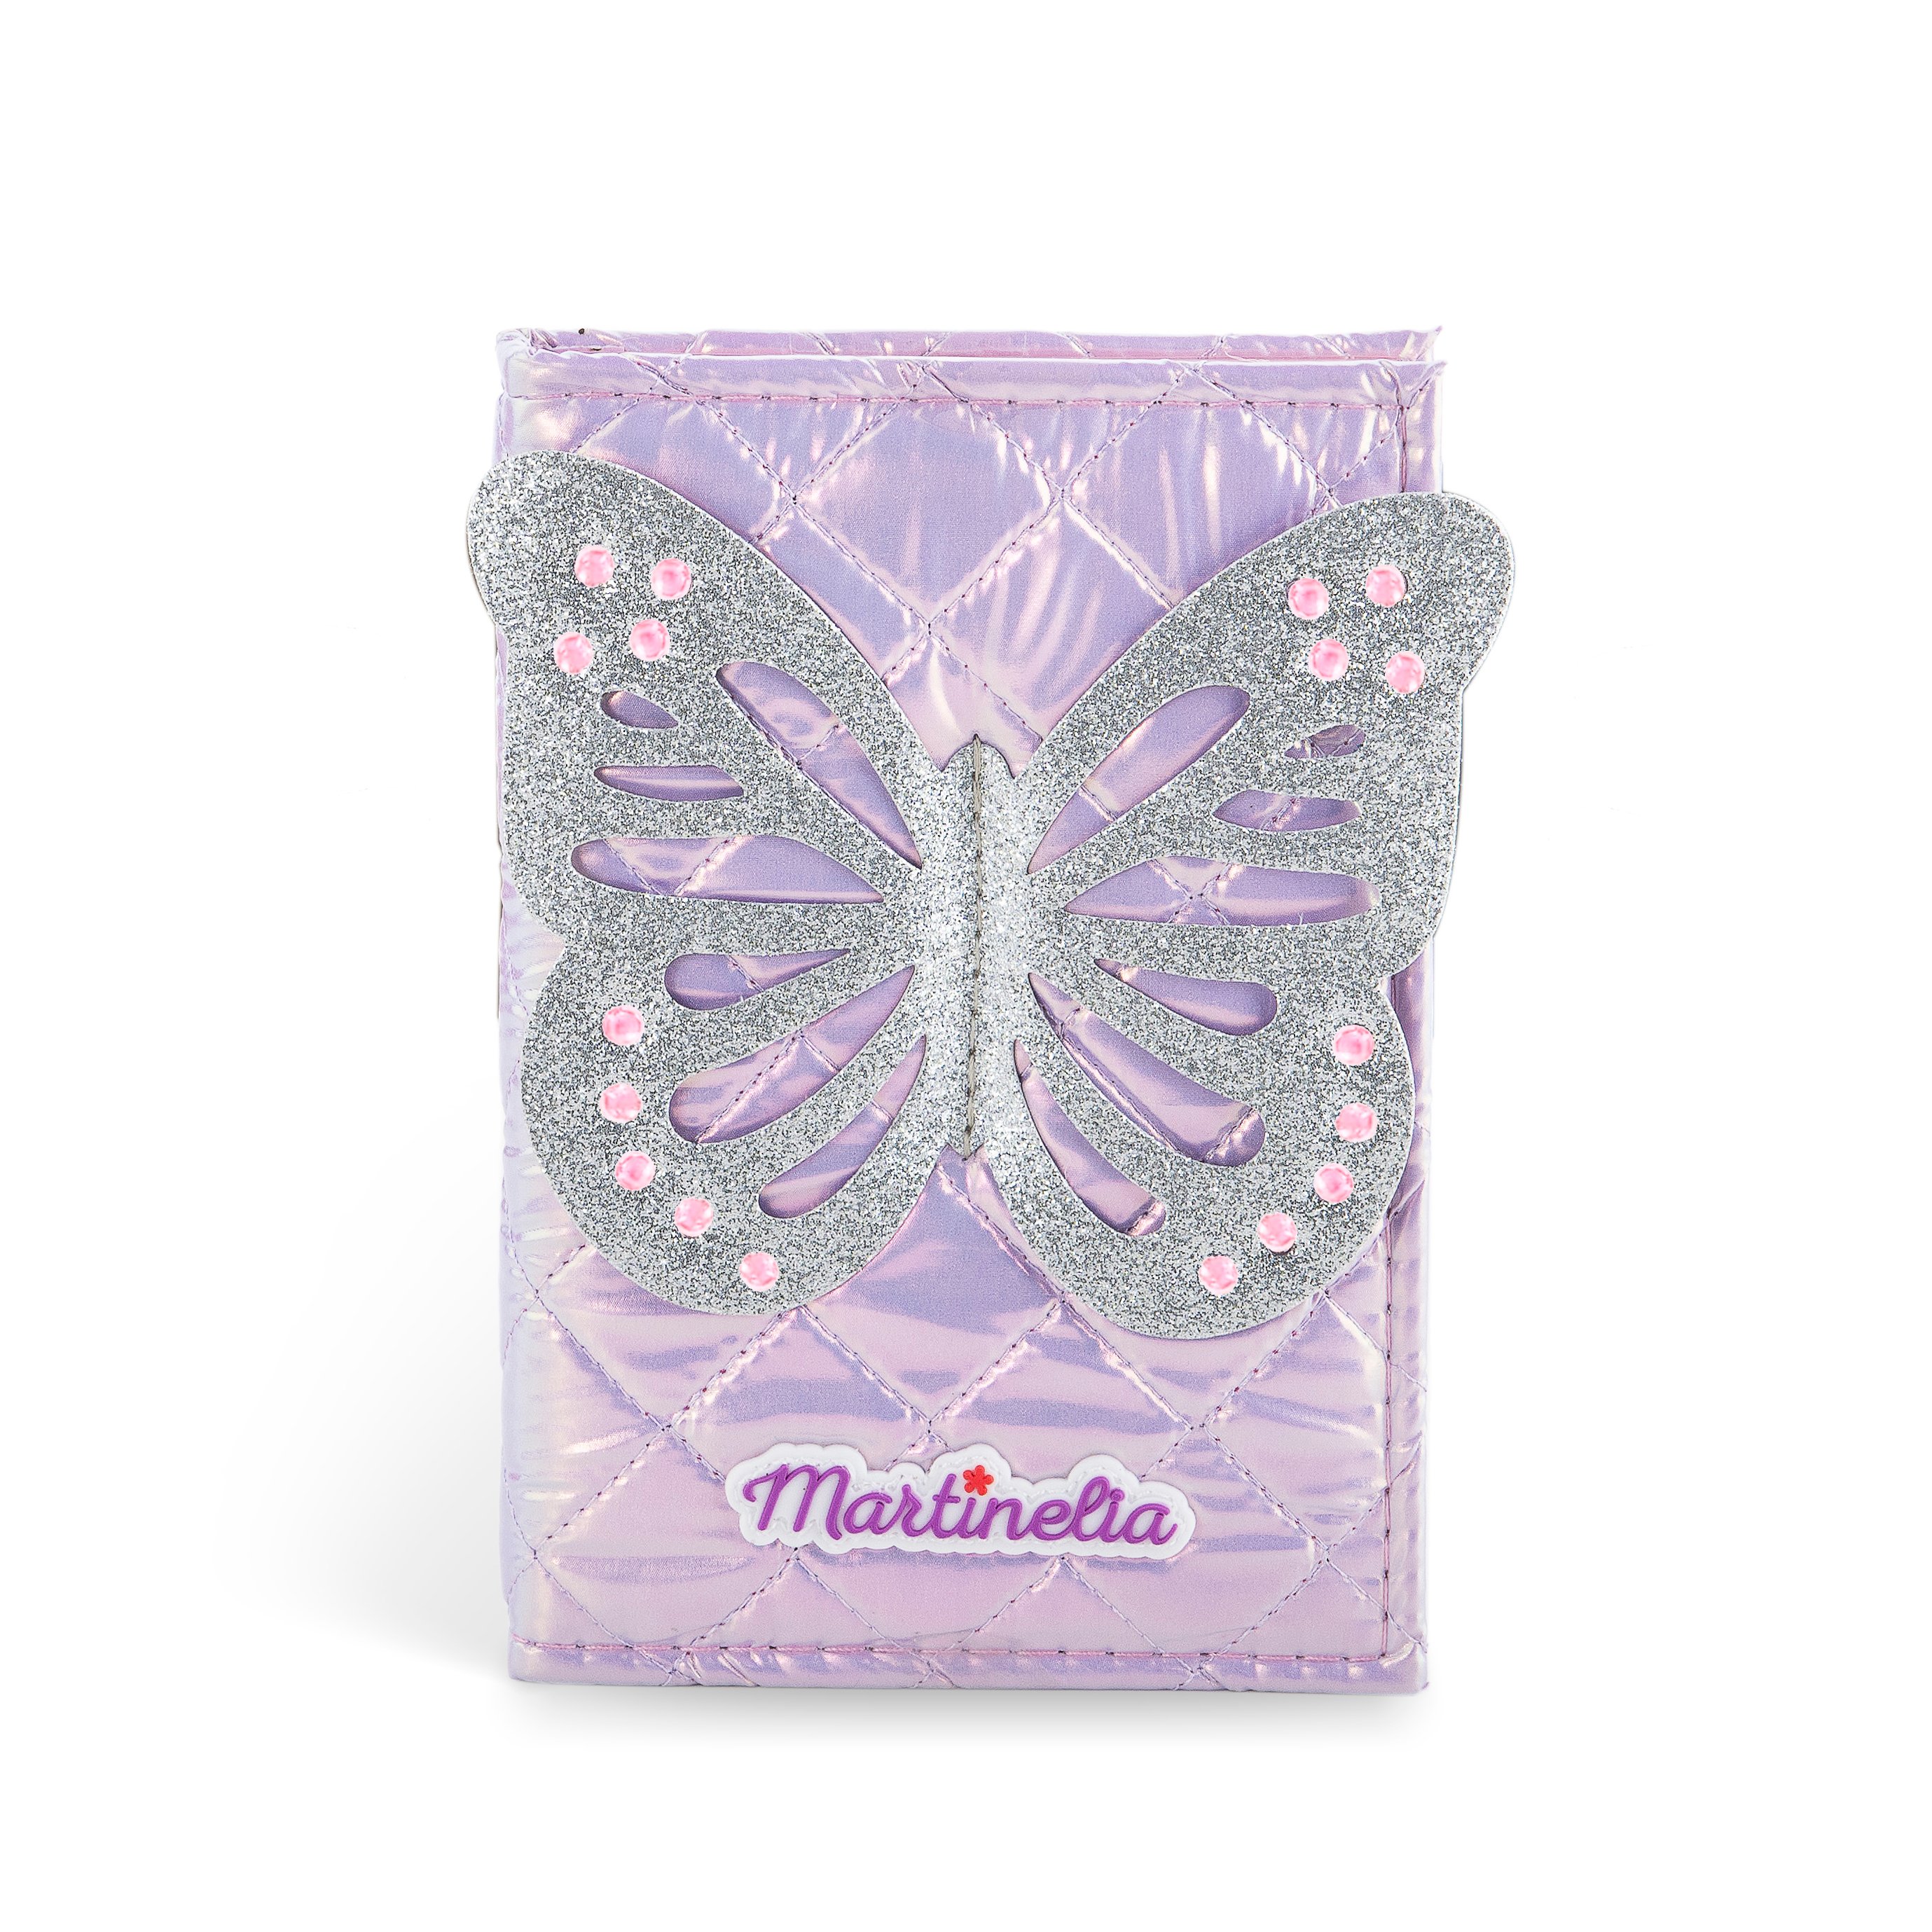 Martinelia - Shimmer Wings - Beauty Book (AQ-12247) - Leker